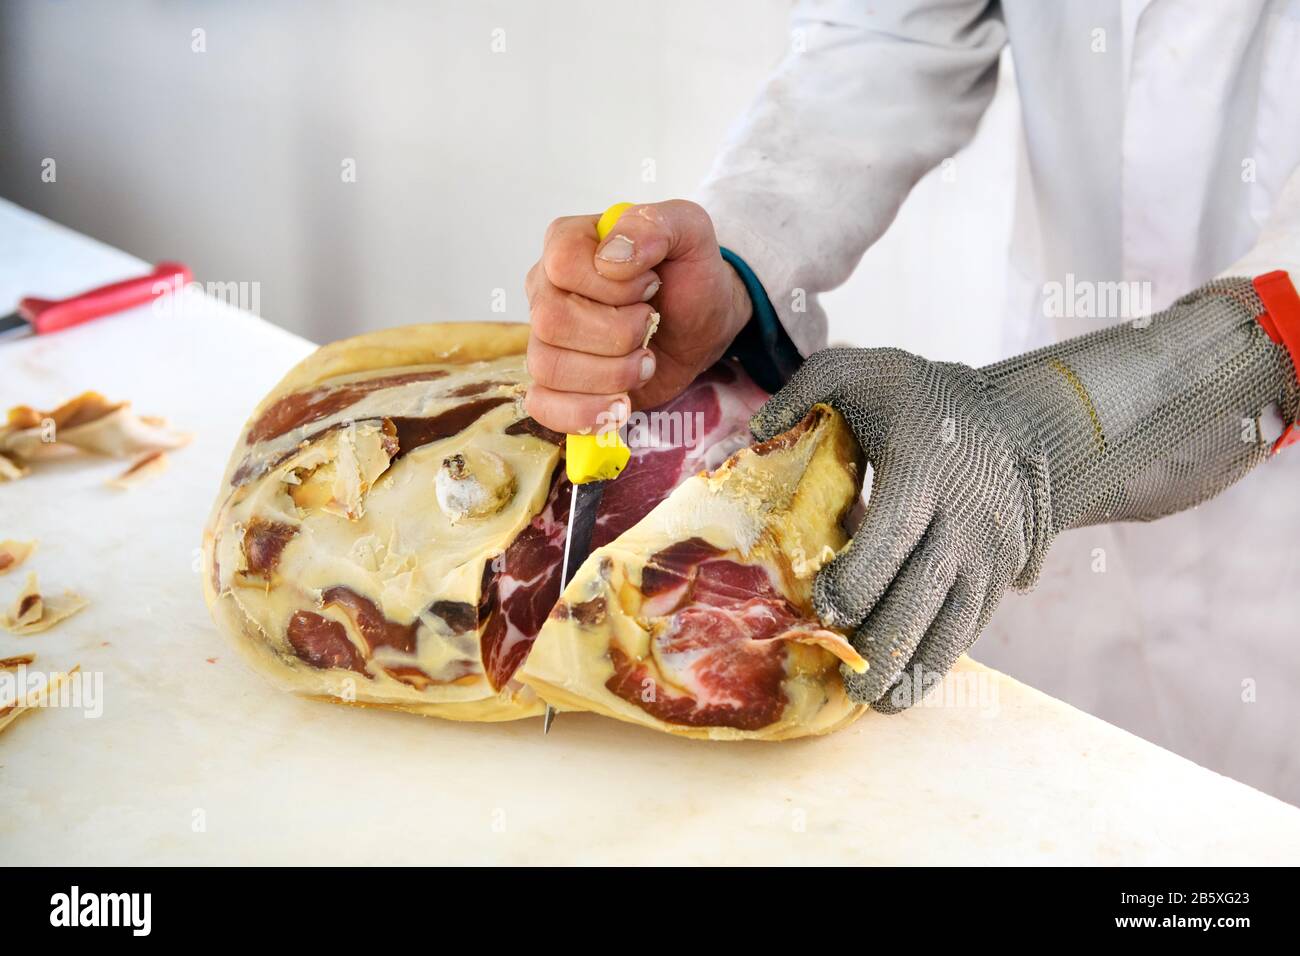 Boucherie avec un couteau tranchant court, désossage de la viande de jambon prosciutto, à l'aide d'un gant résistant à la coupe en maille de fil Banque D'Images